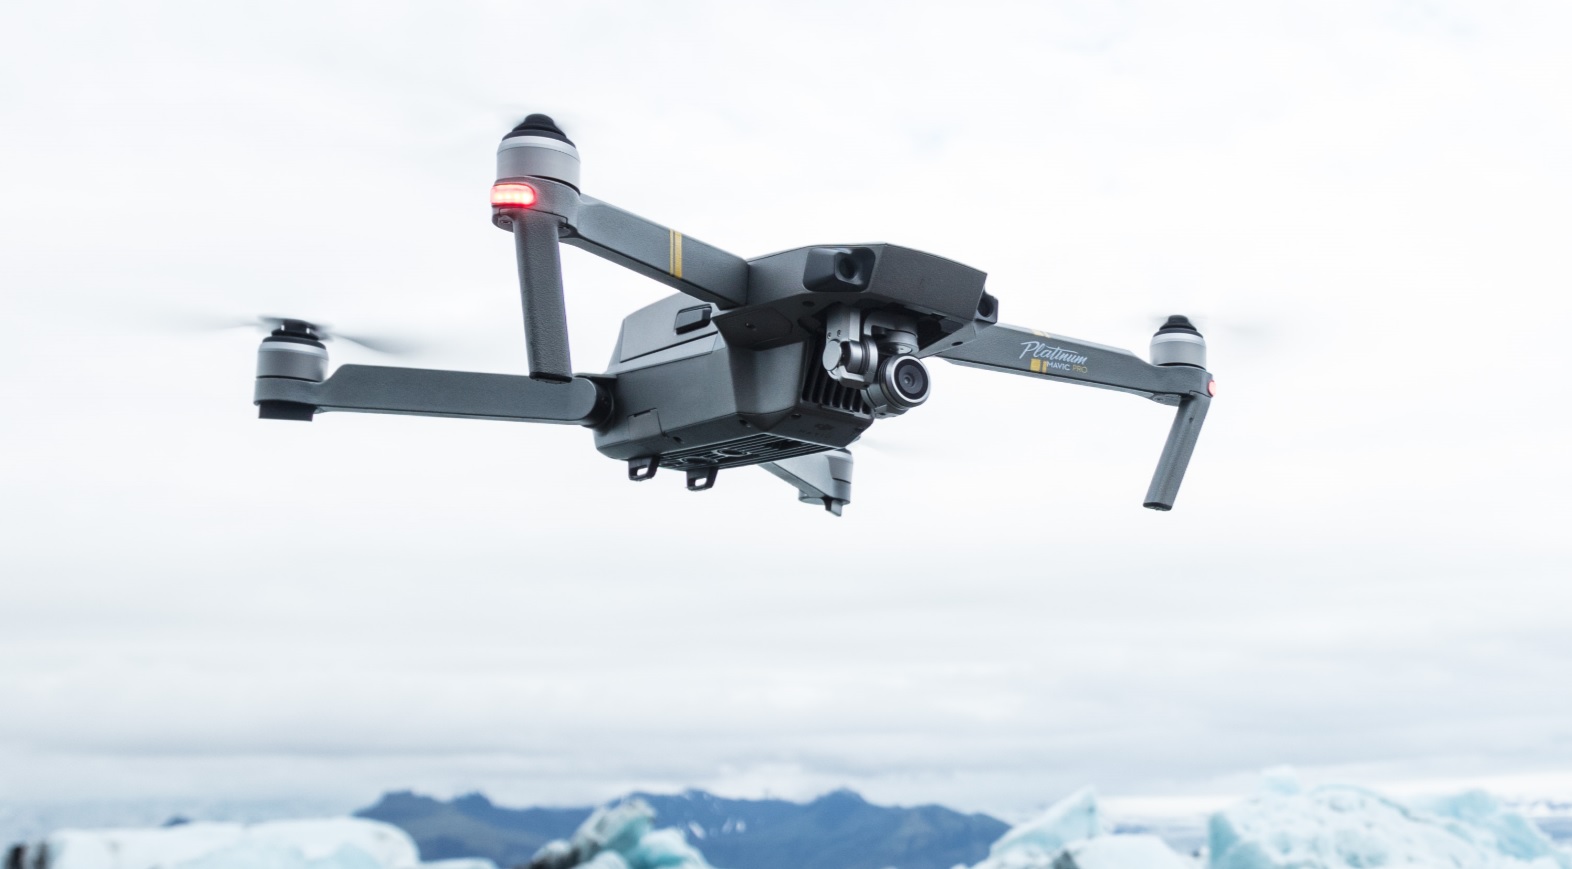 Super offerta sul drone DJI Mavic Pro Platinum Fly More Combo a 949 euro su Amazon